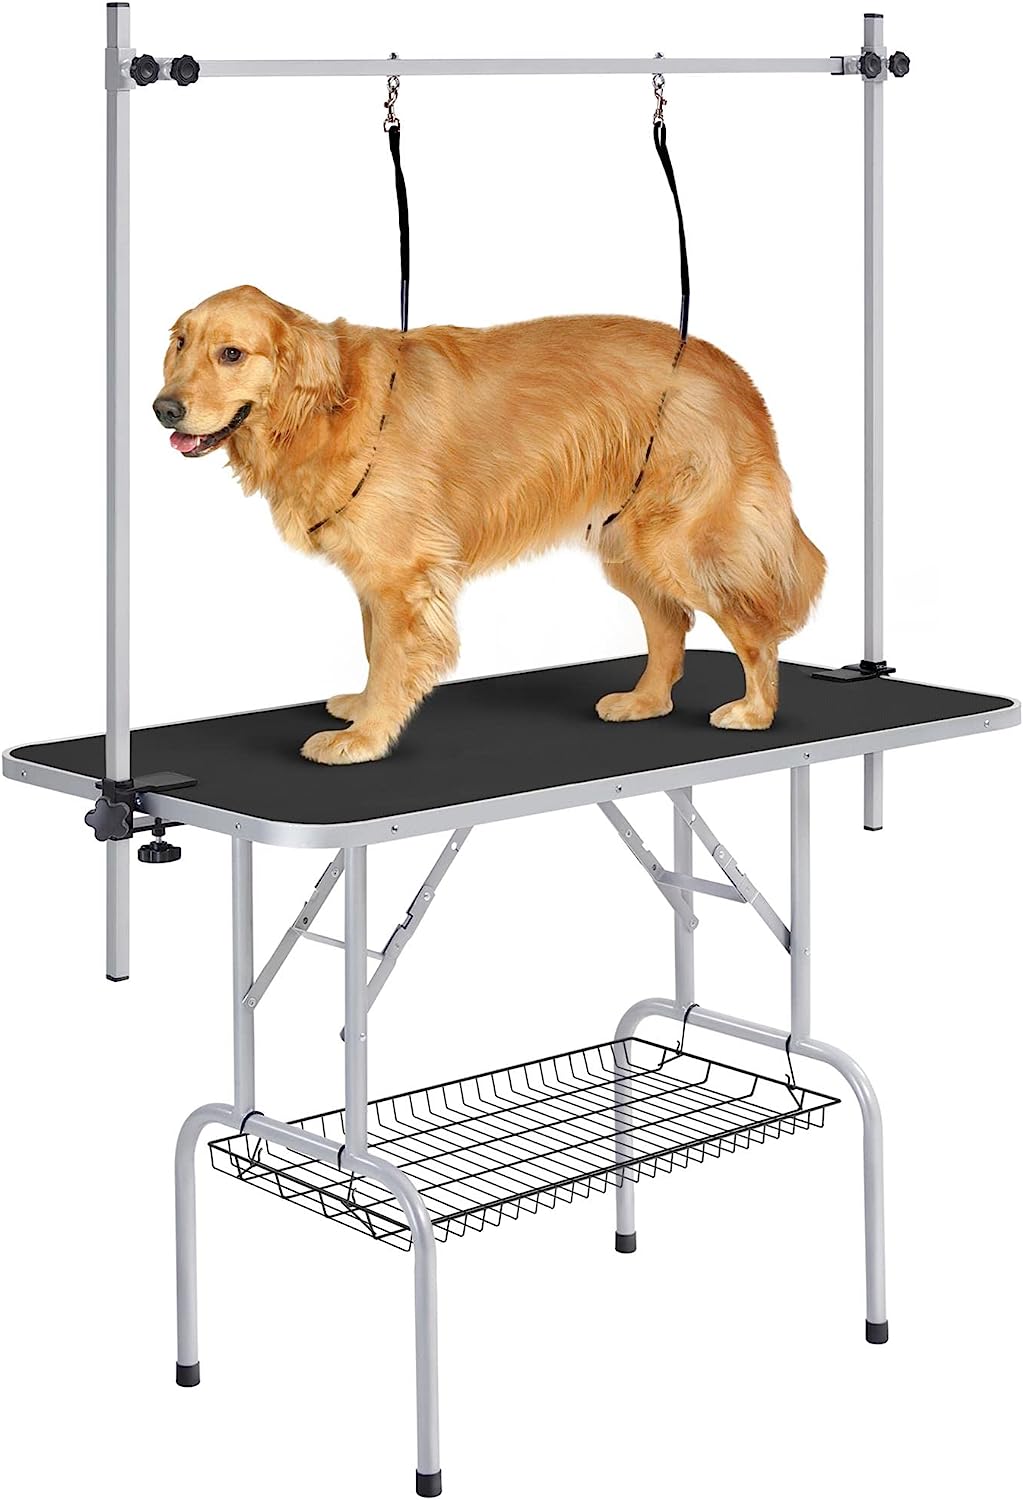 Table de coupe réglable en hauteur pour chien